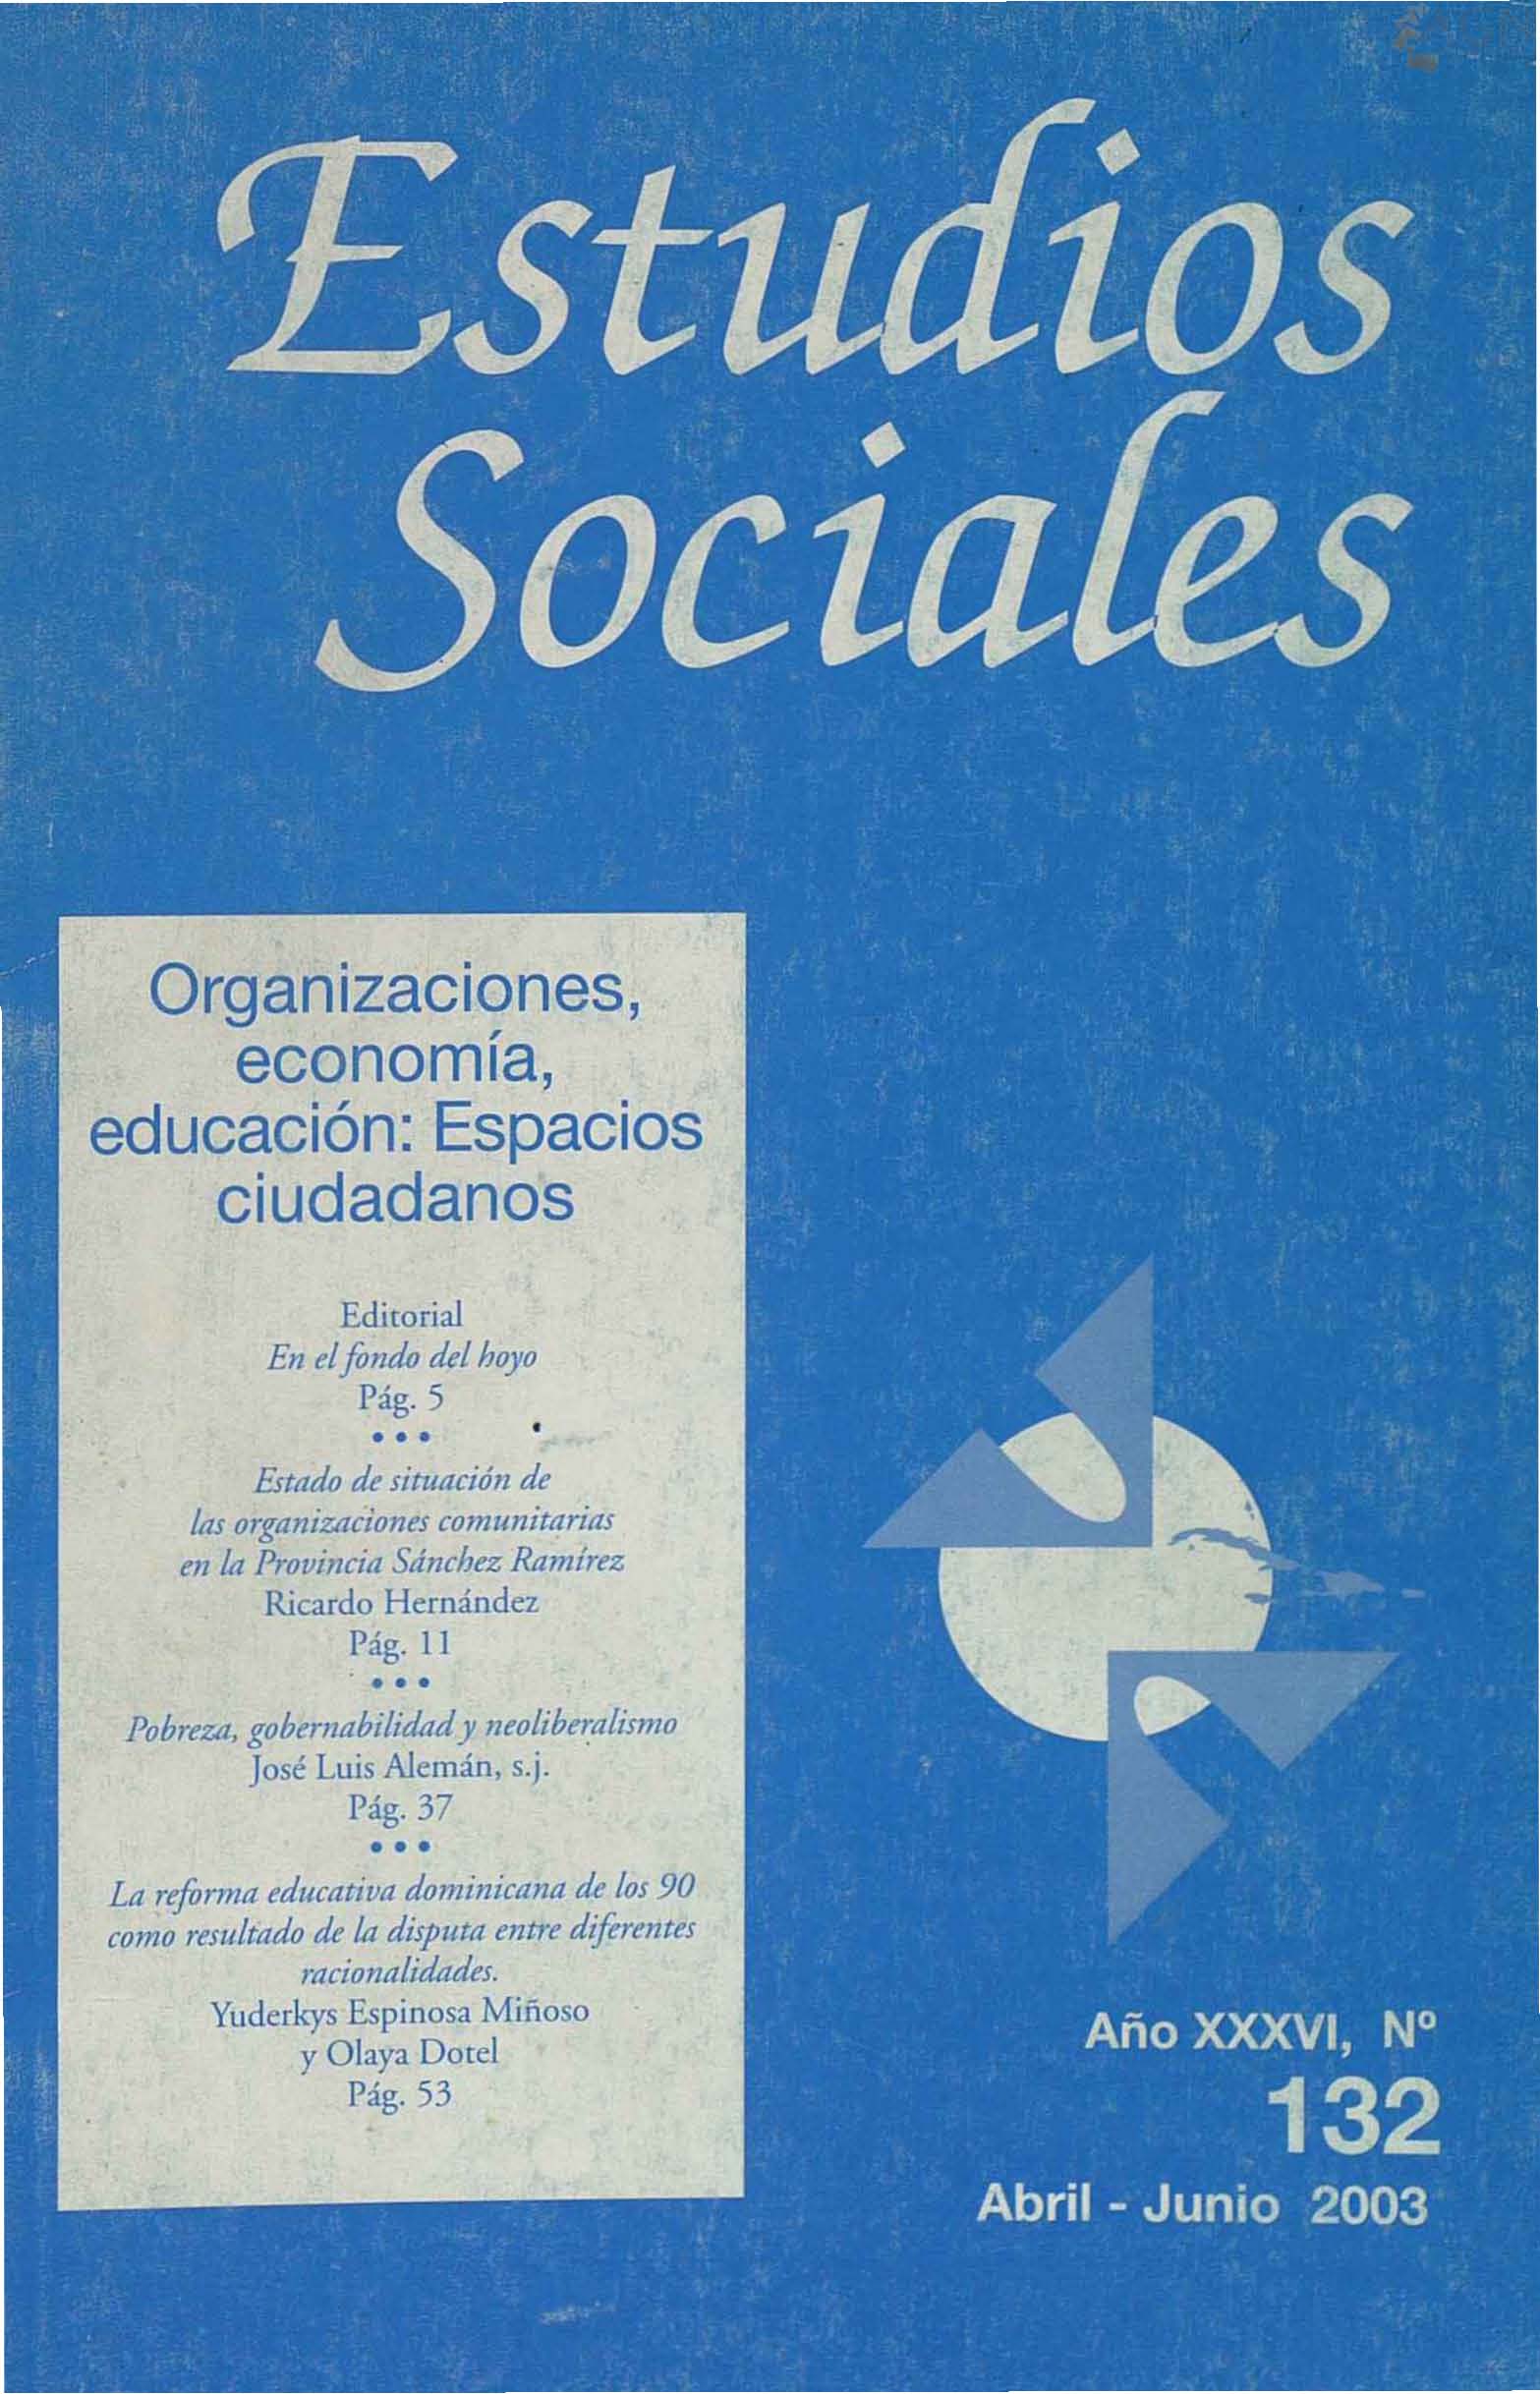 						View Vol. 36 No. 132 (2003): Organizaciones, economía, educación: Espacios Ciudadanos
					